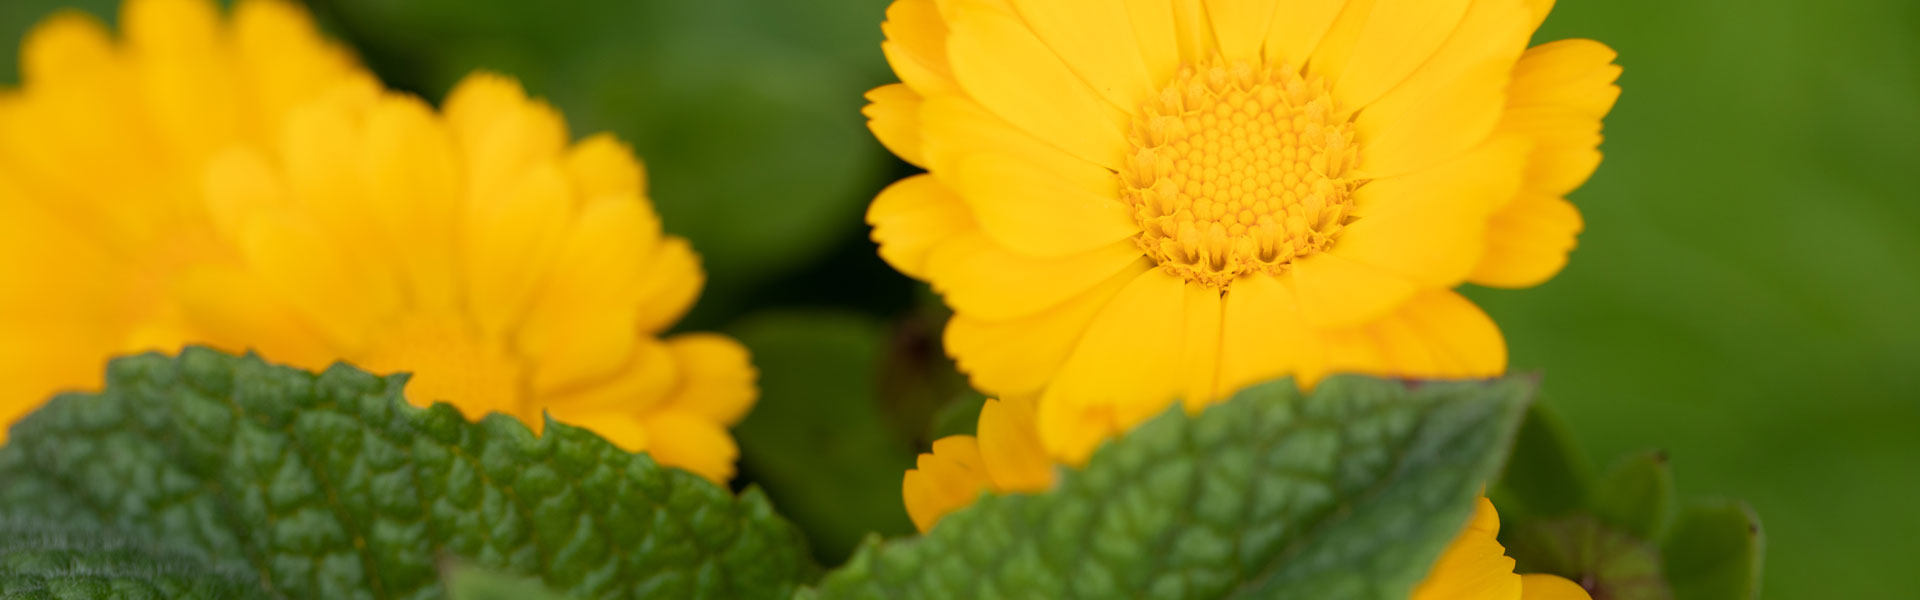 Yellow flowers in garden